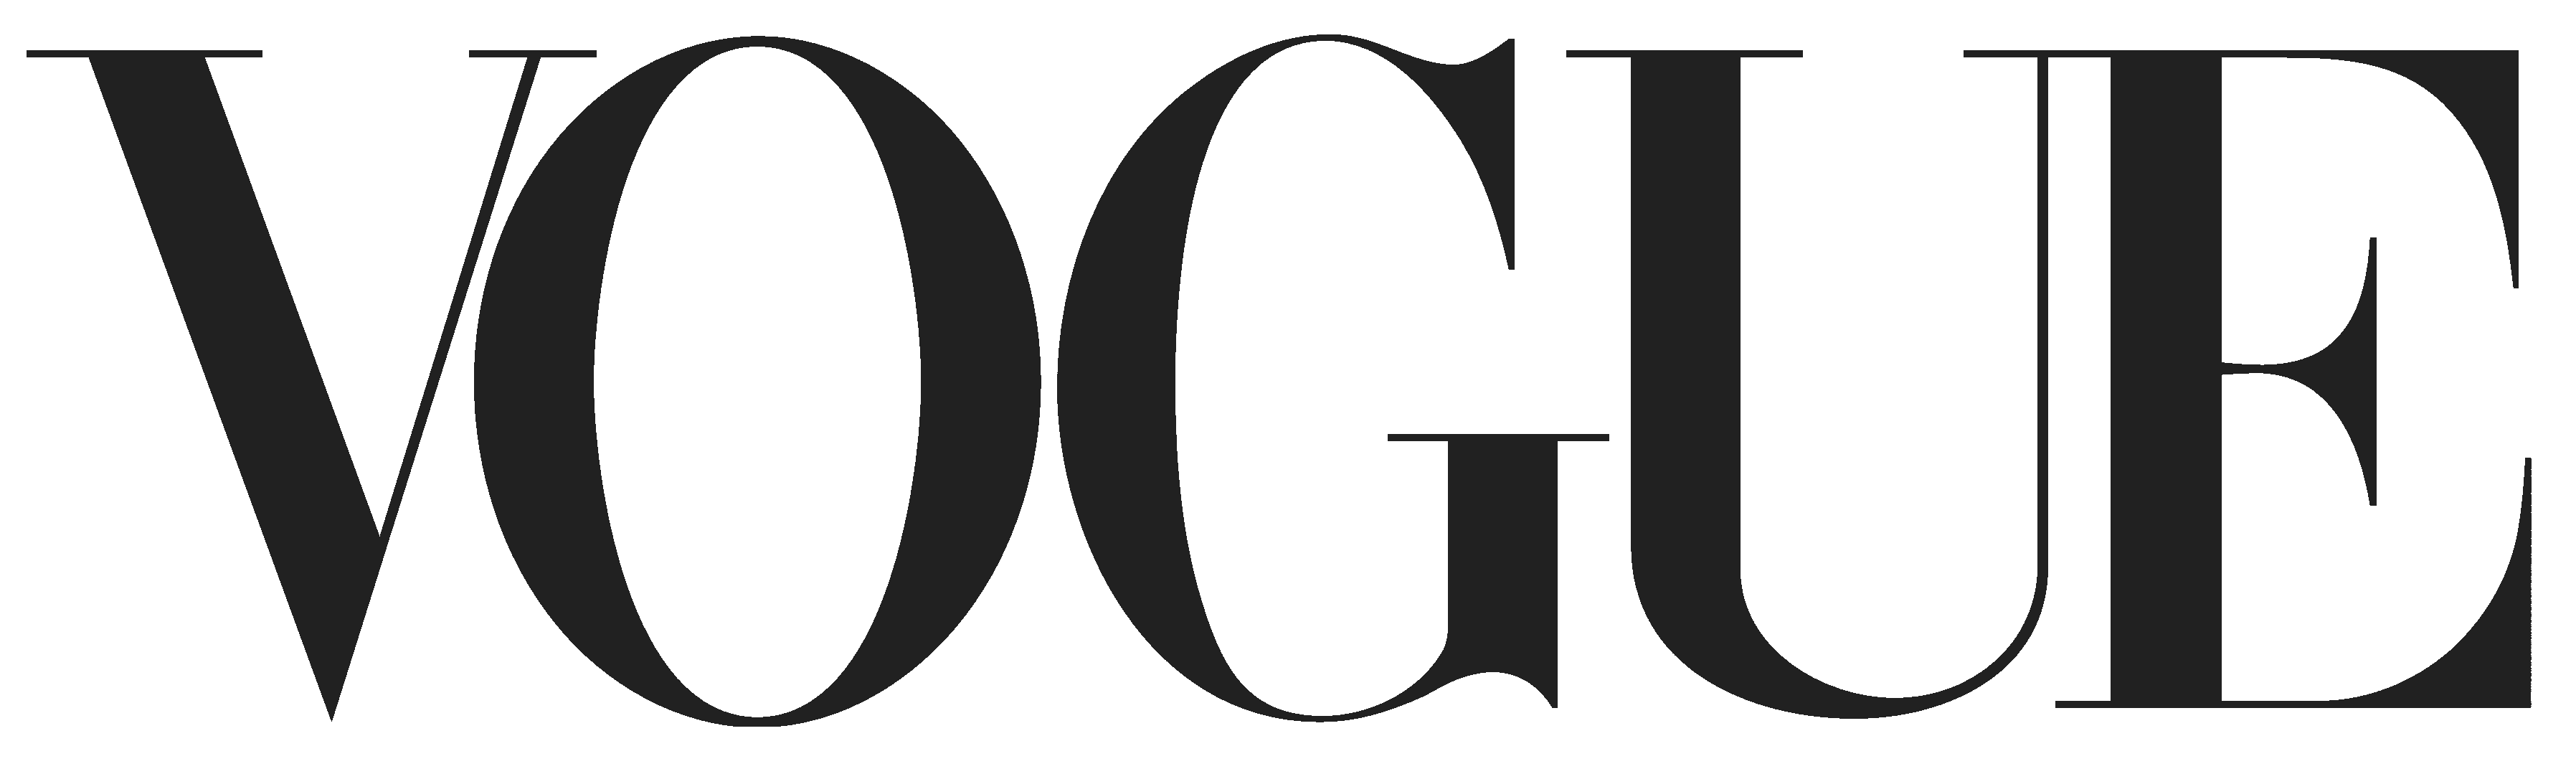 Vogue-logo-crop